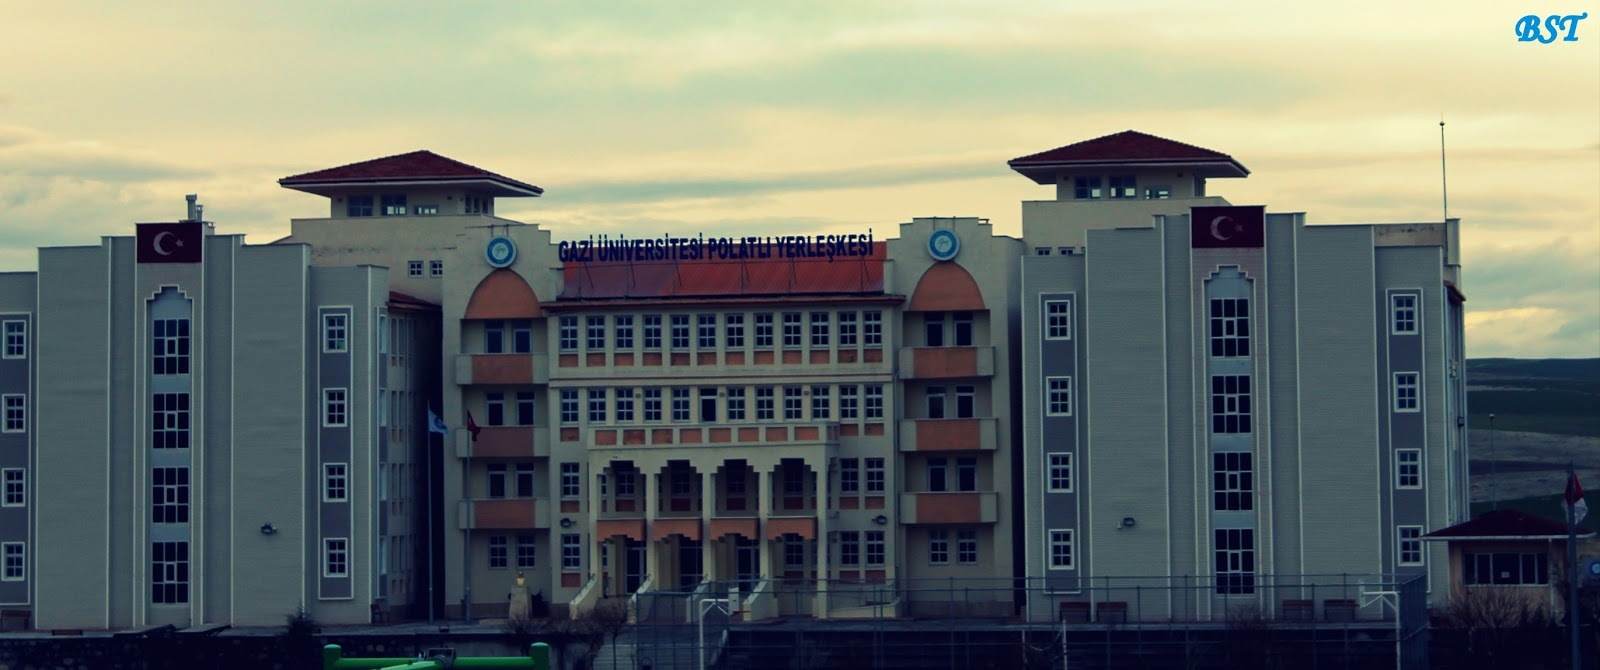 Gazi Üniversitesi Polatlı Fen Edebiyat Fakültesi